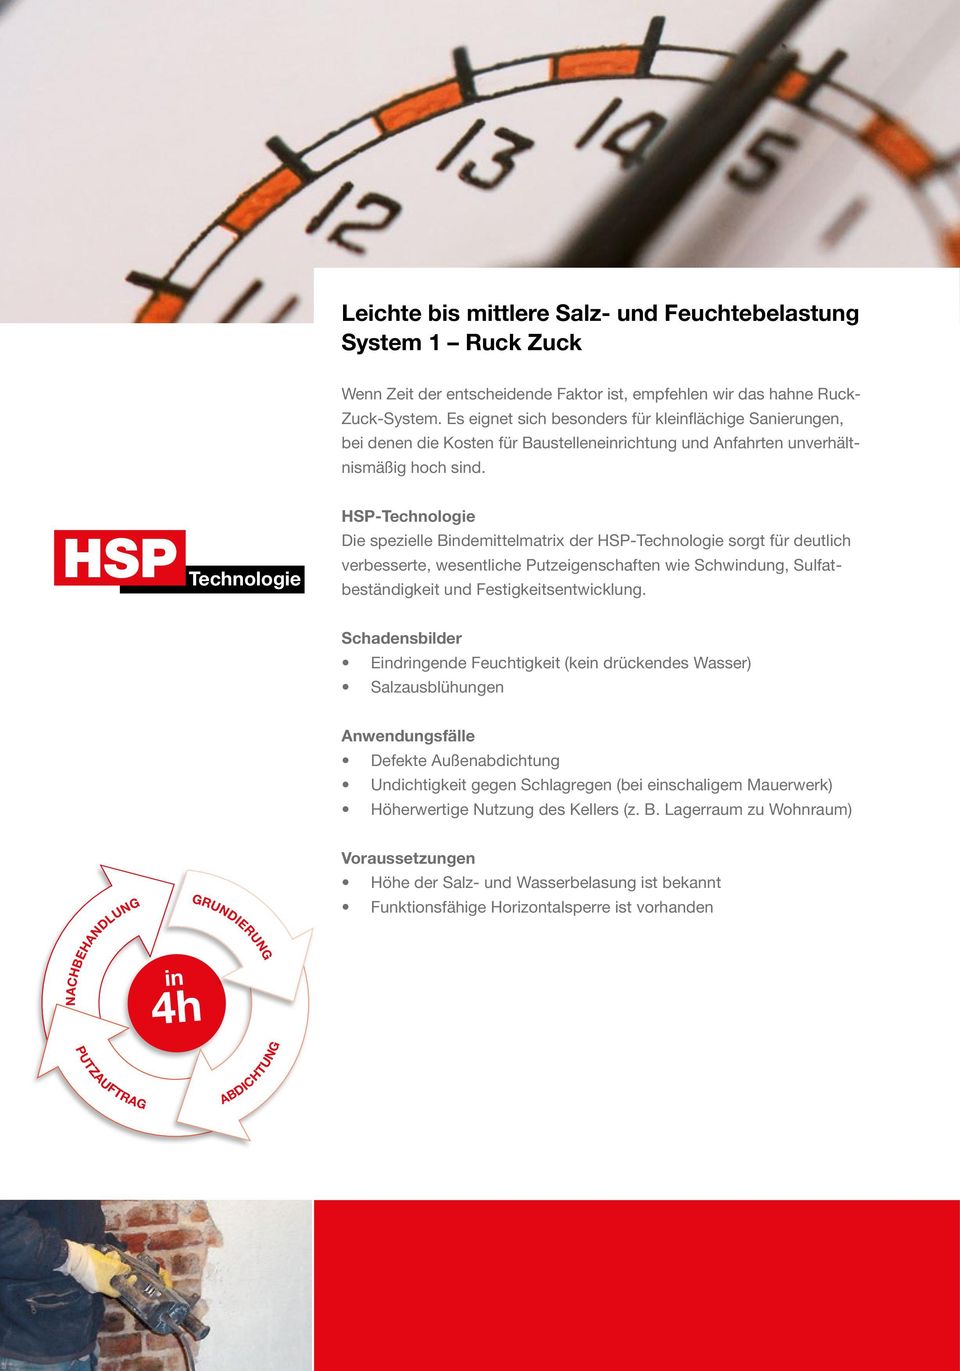 HSP Technologie HSP-Technologie Die spezielle Bindemittelmatrix der HSP-Technologie sorgt für deutlich verbesserte, wesentliche Putzeigenschaften wie Schwindung, Sulfatbeständigkeit und